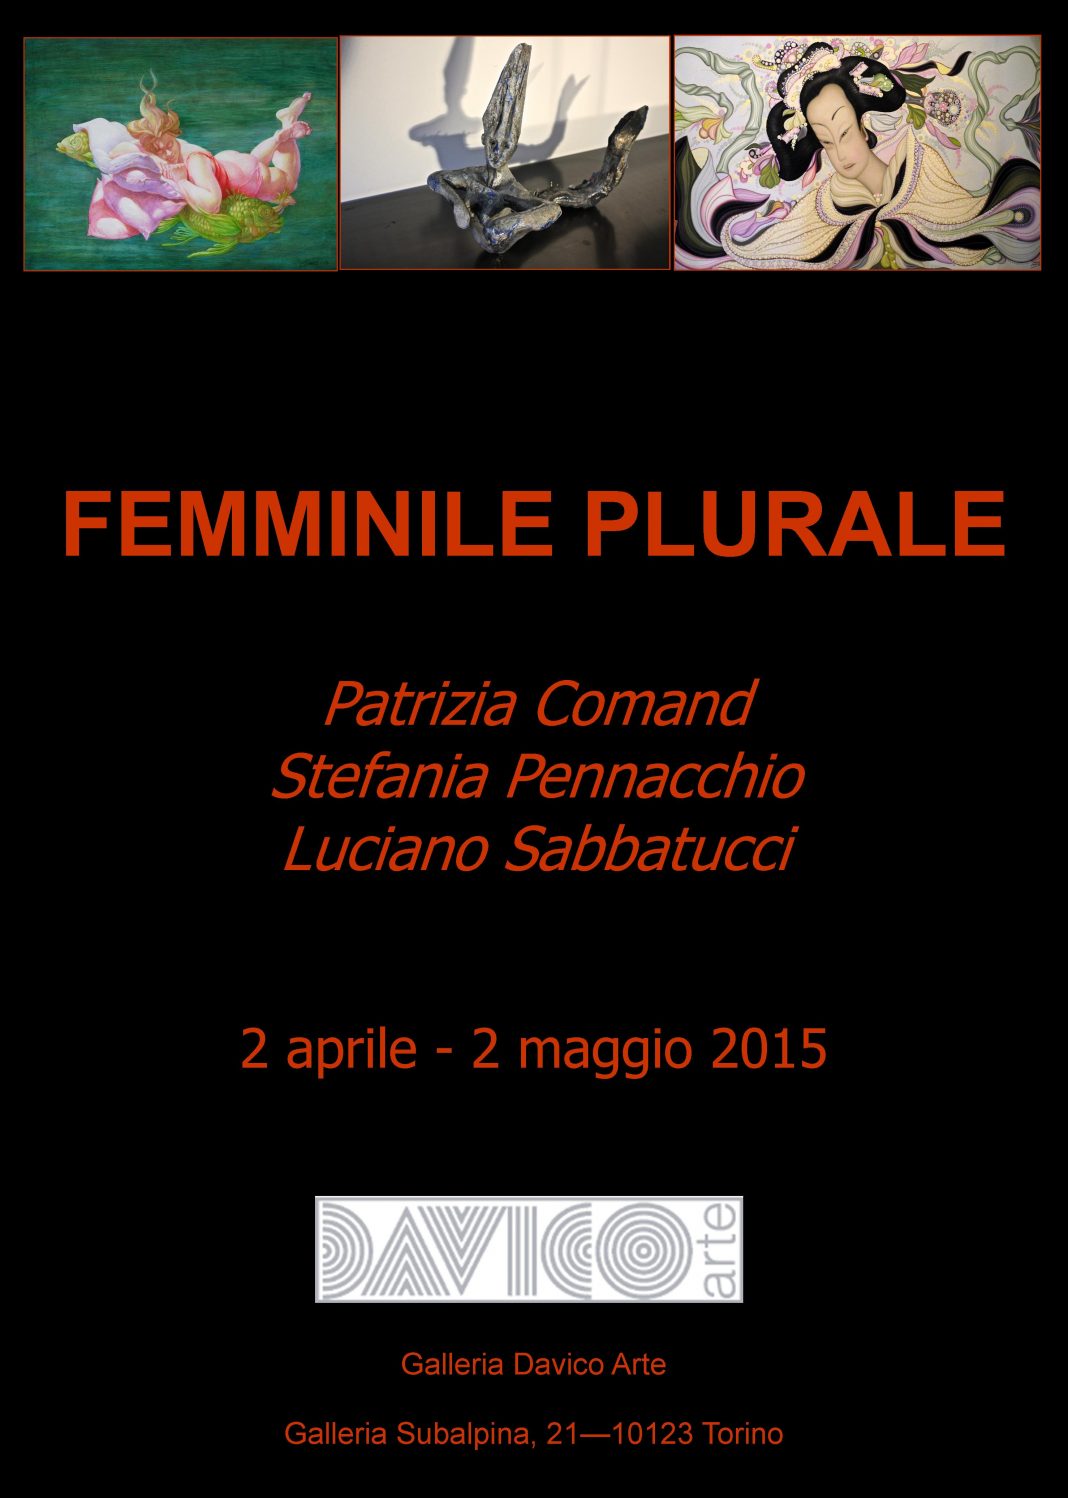 Comand/Pennacchio/Sabbatucci – Femminile Pluralehttps://www.exibart.com/repository/media/eventi/2015/03/comandpennacchiosabbatucci-8211-femminile-plurale-1068x1498.jpg